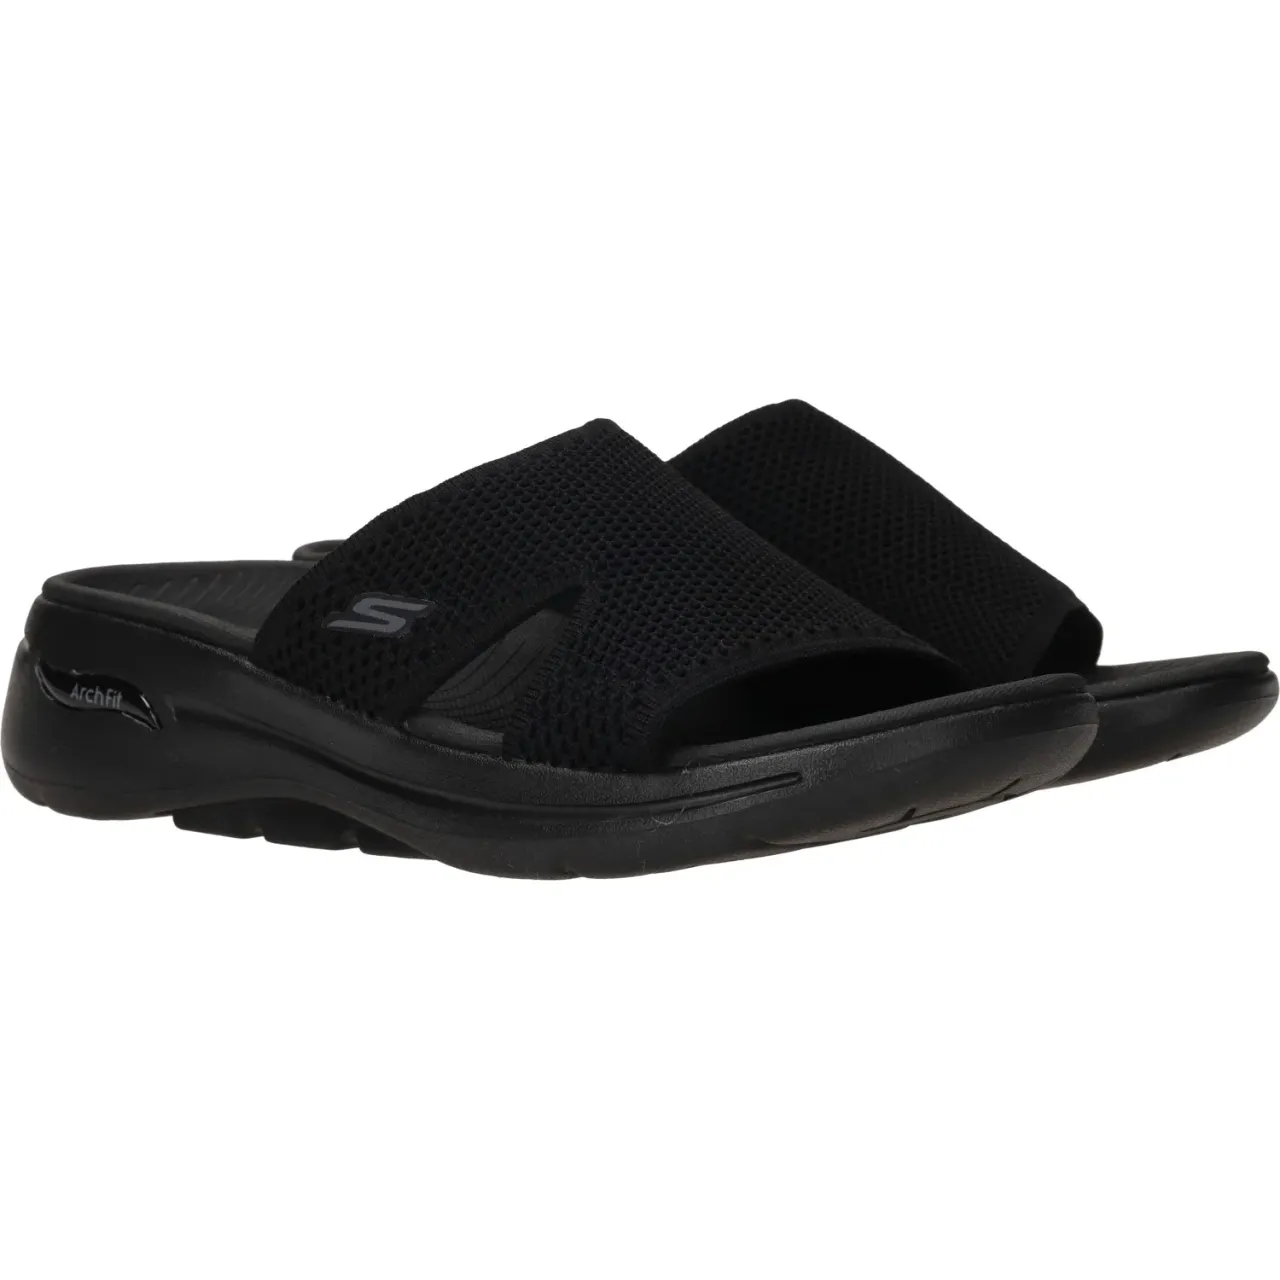 Skechers Go walk arch fit sandal joyful slipper